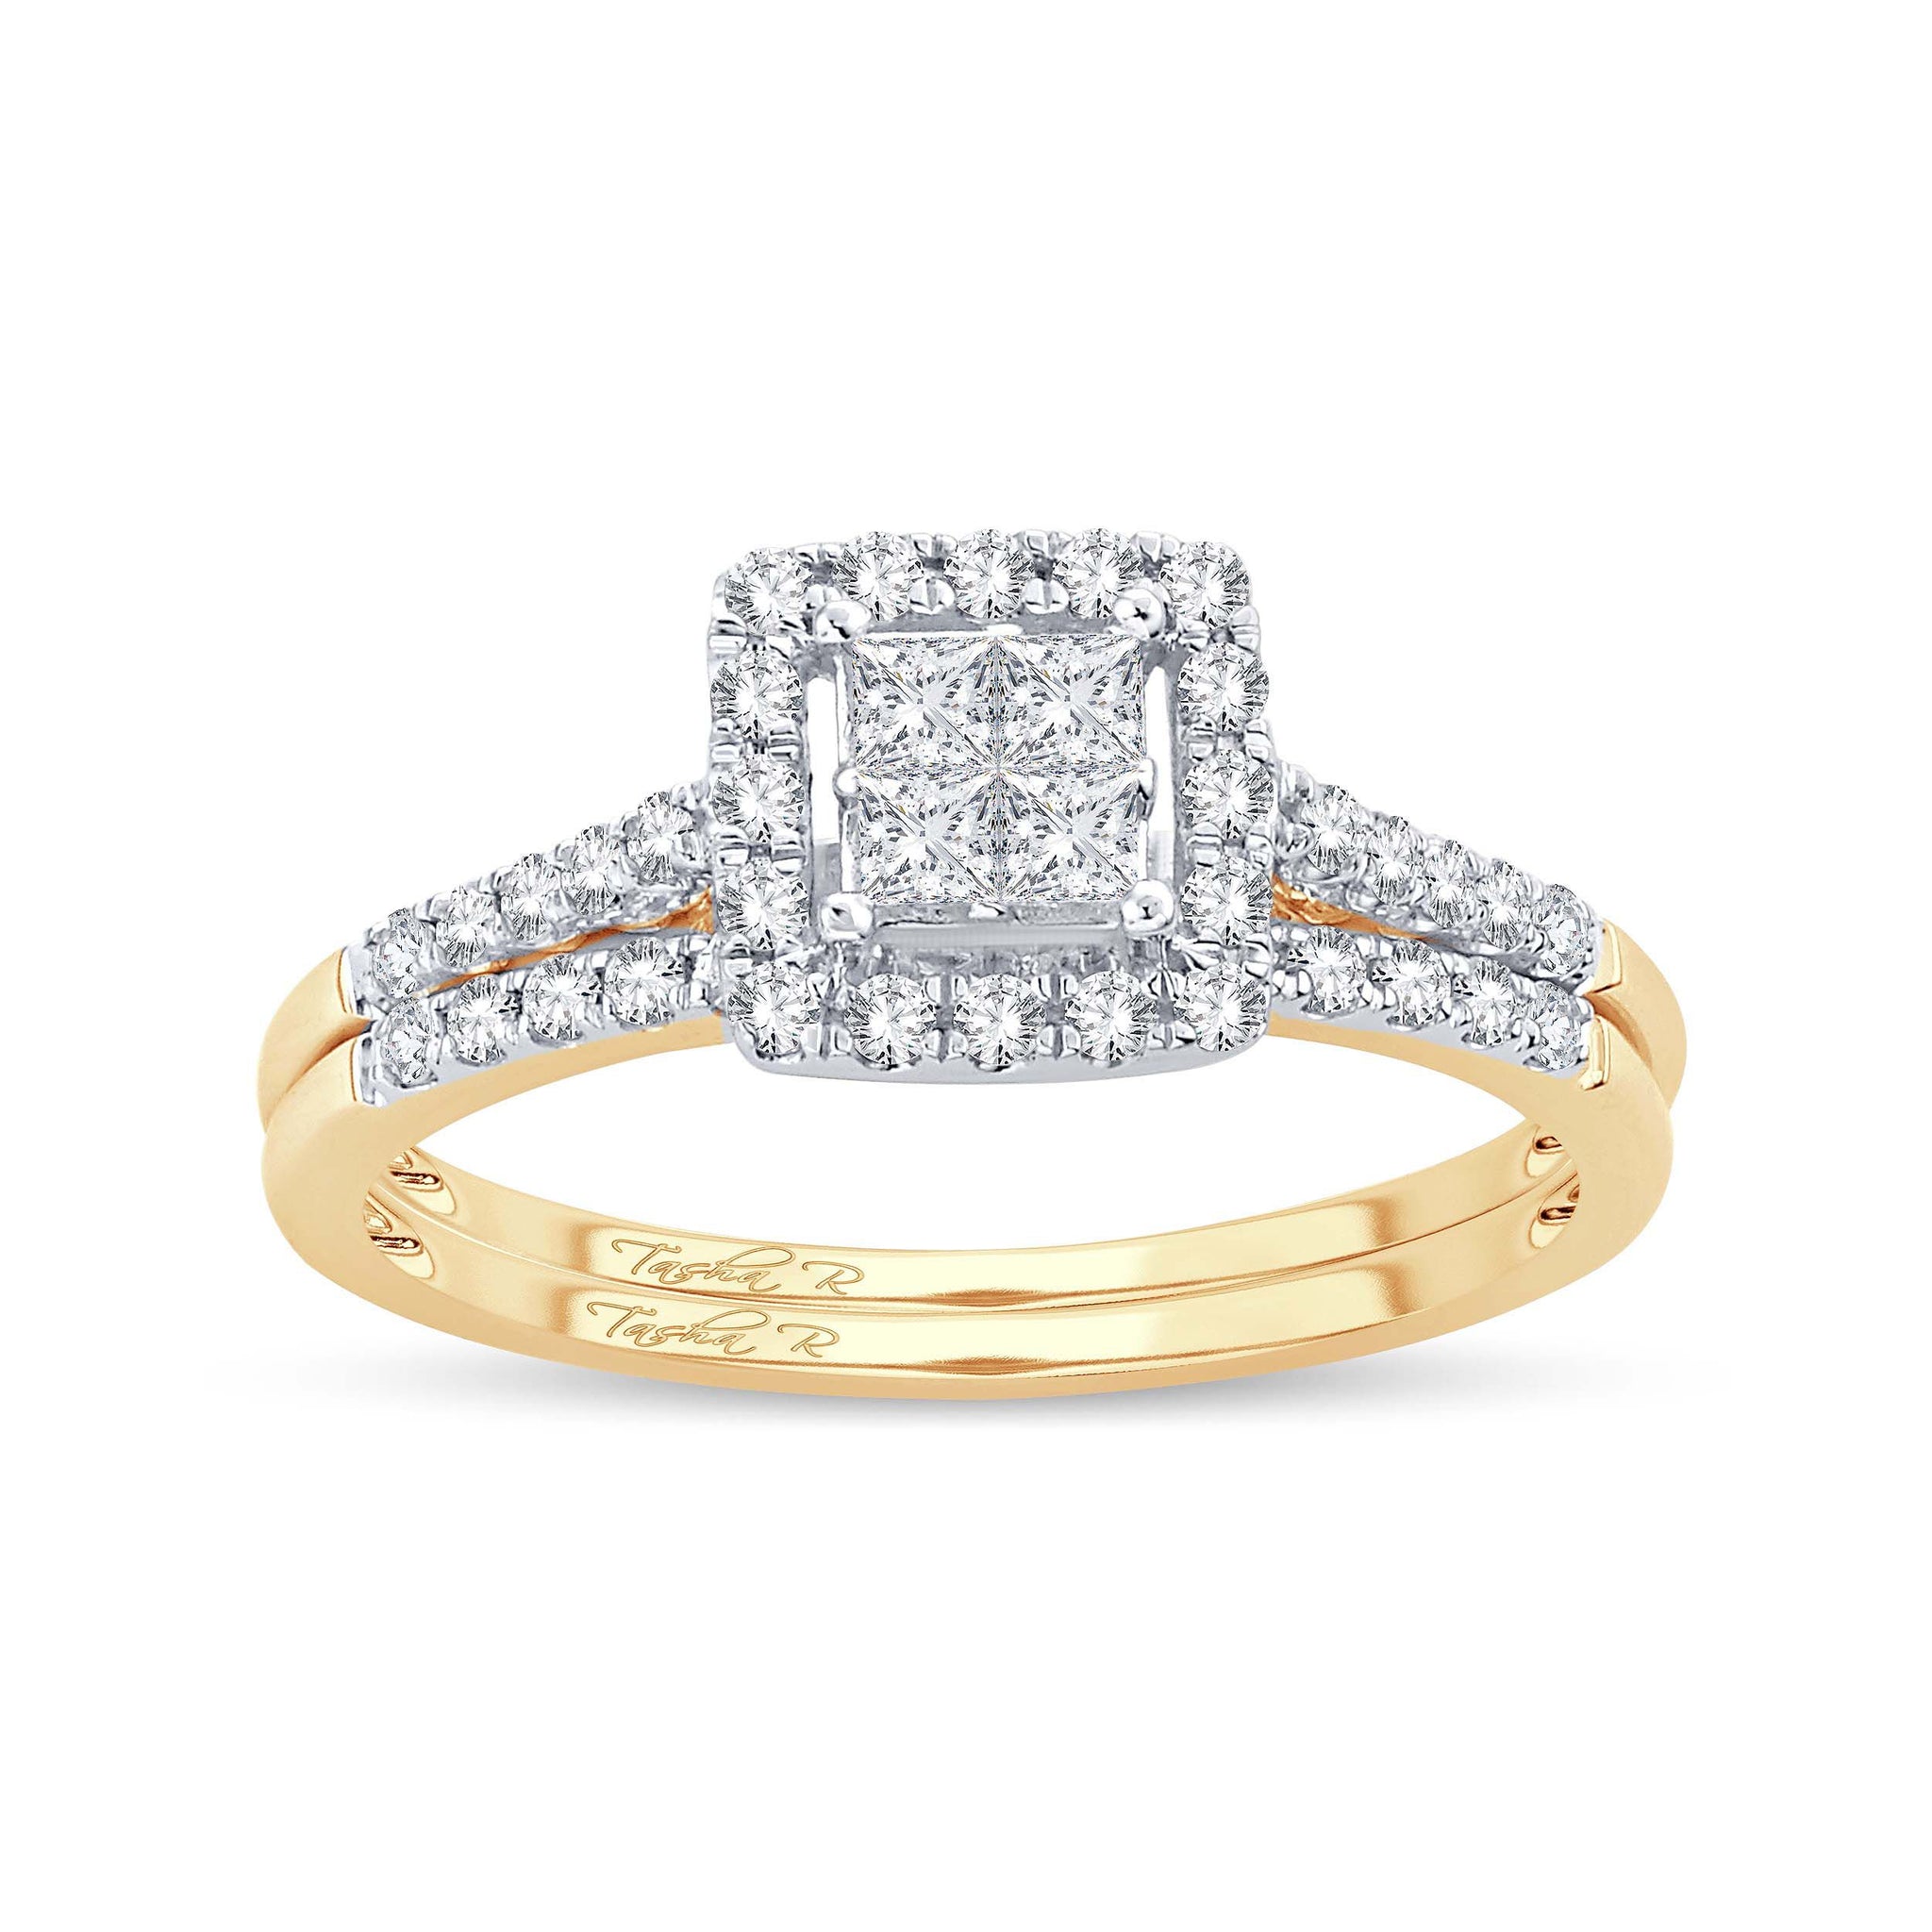 Diamond Ring Princess Cut 1.25 Carats 14KT Yellow Gold